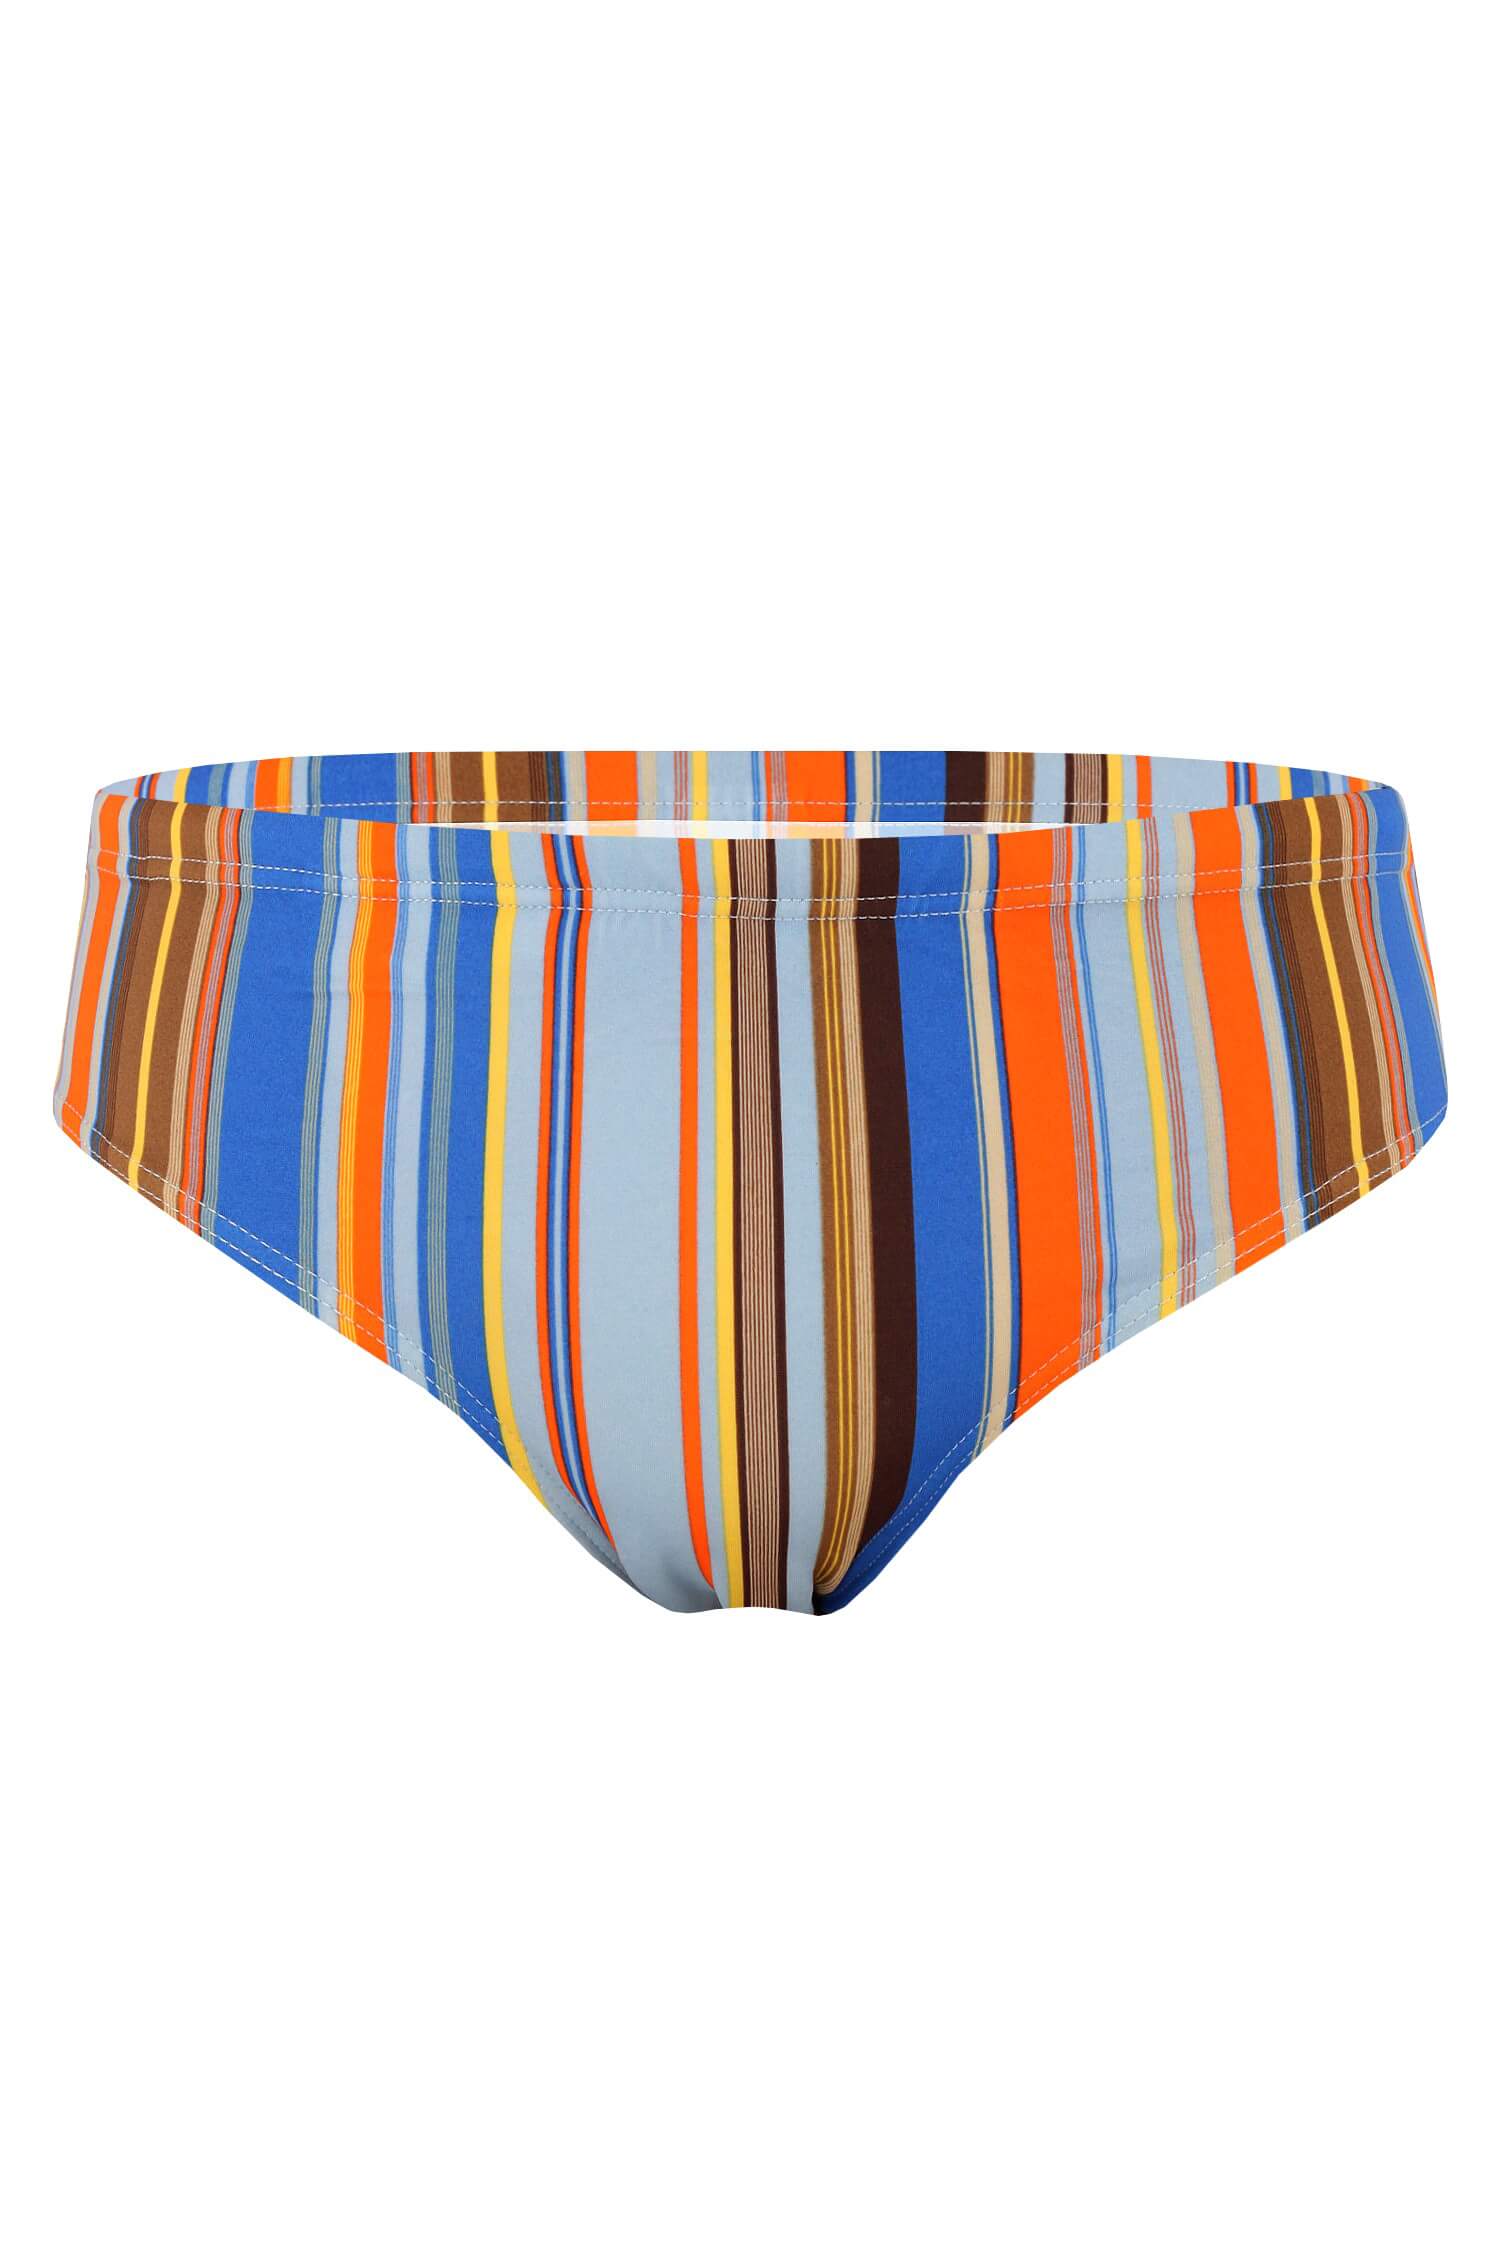 Raynas stripes pánské slipové plavky XL modrá